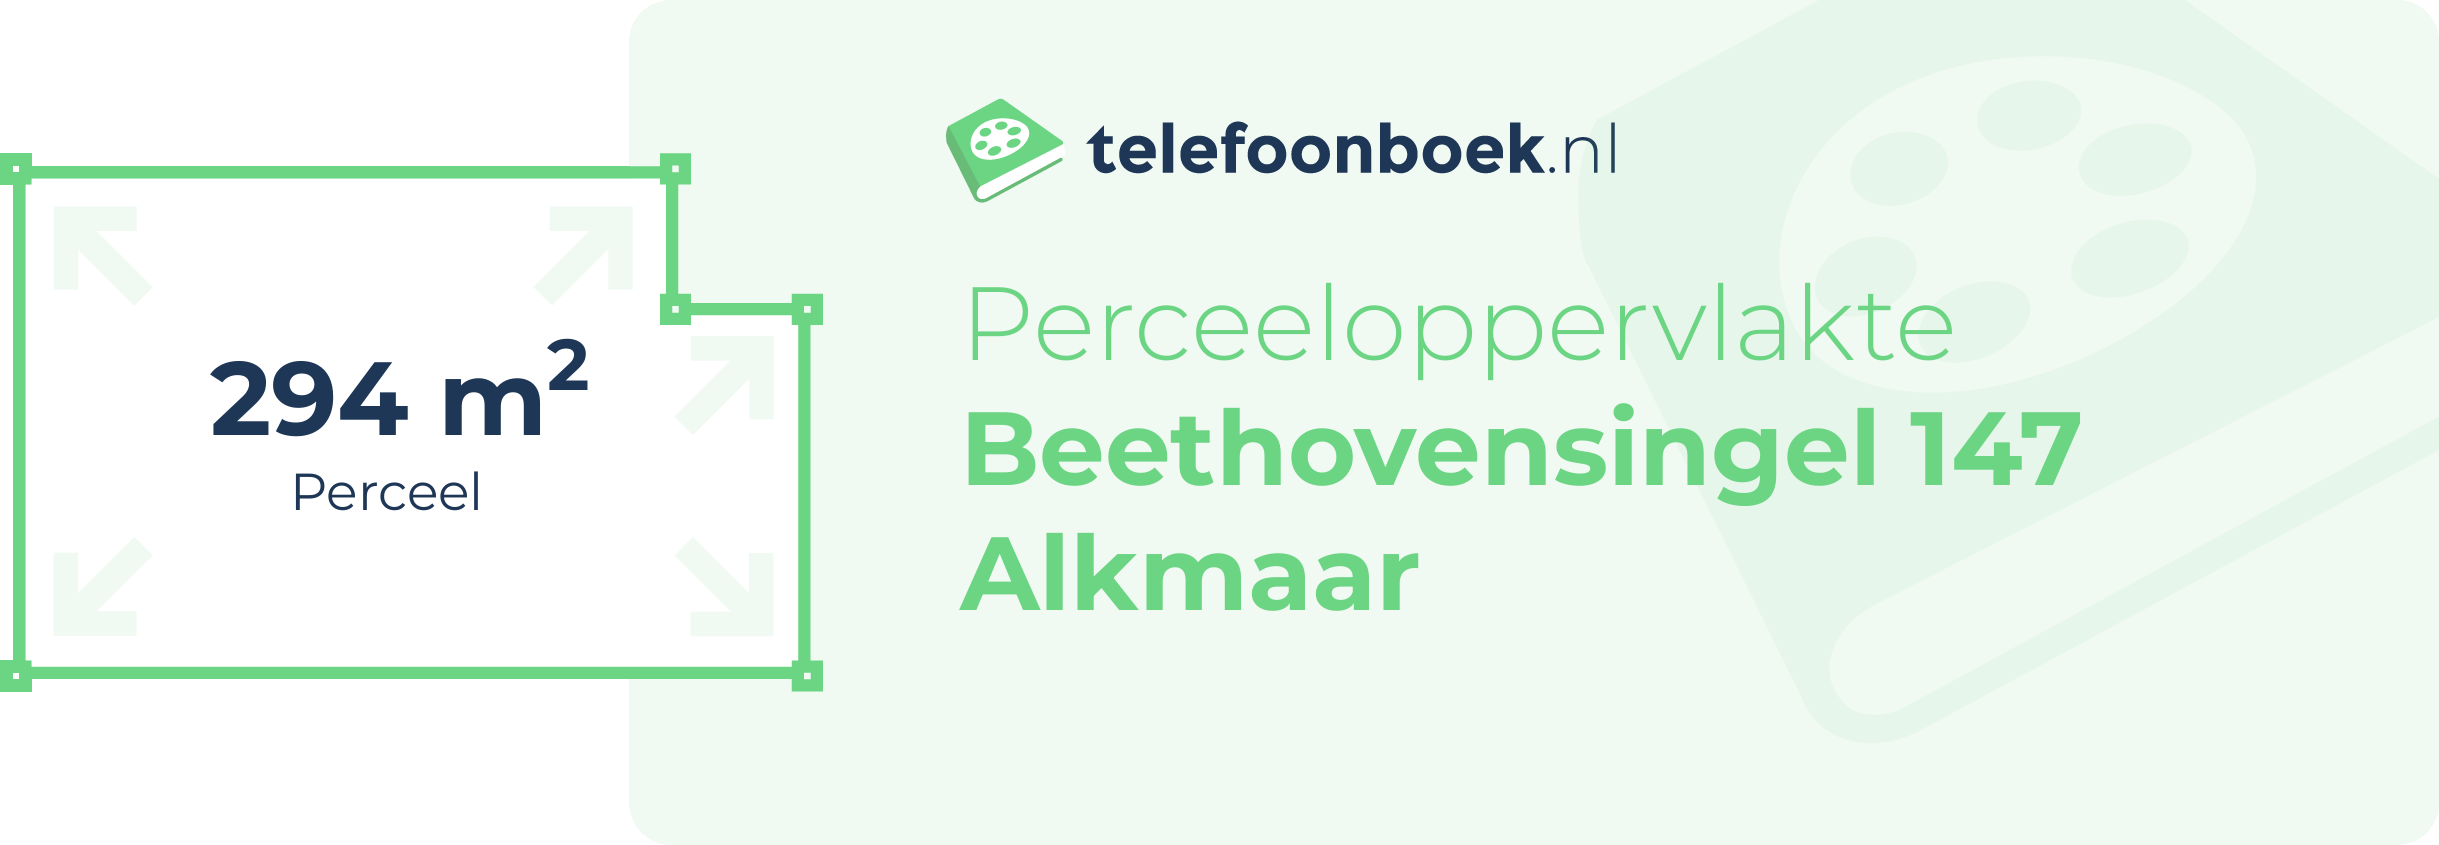 Perceeloppervlakte Beethovensingel 147 Alkmaar